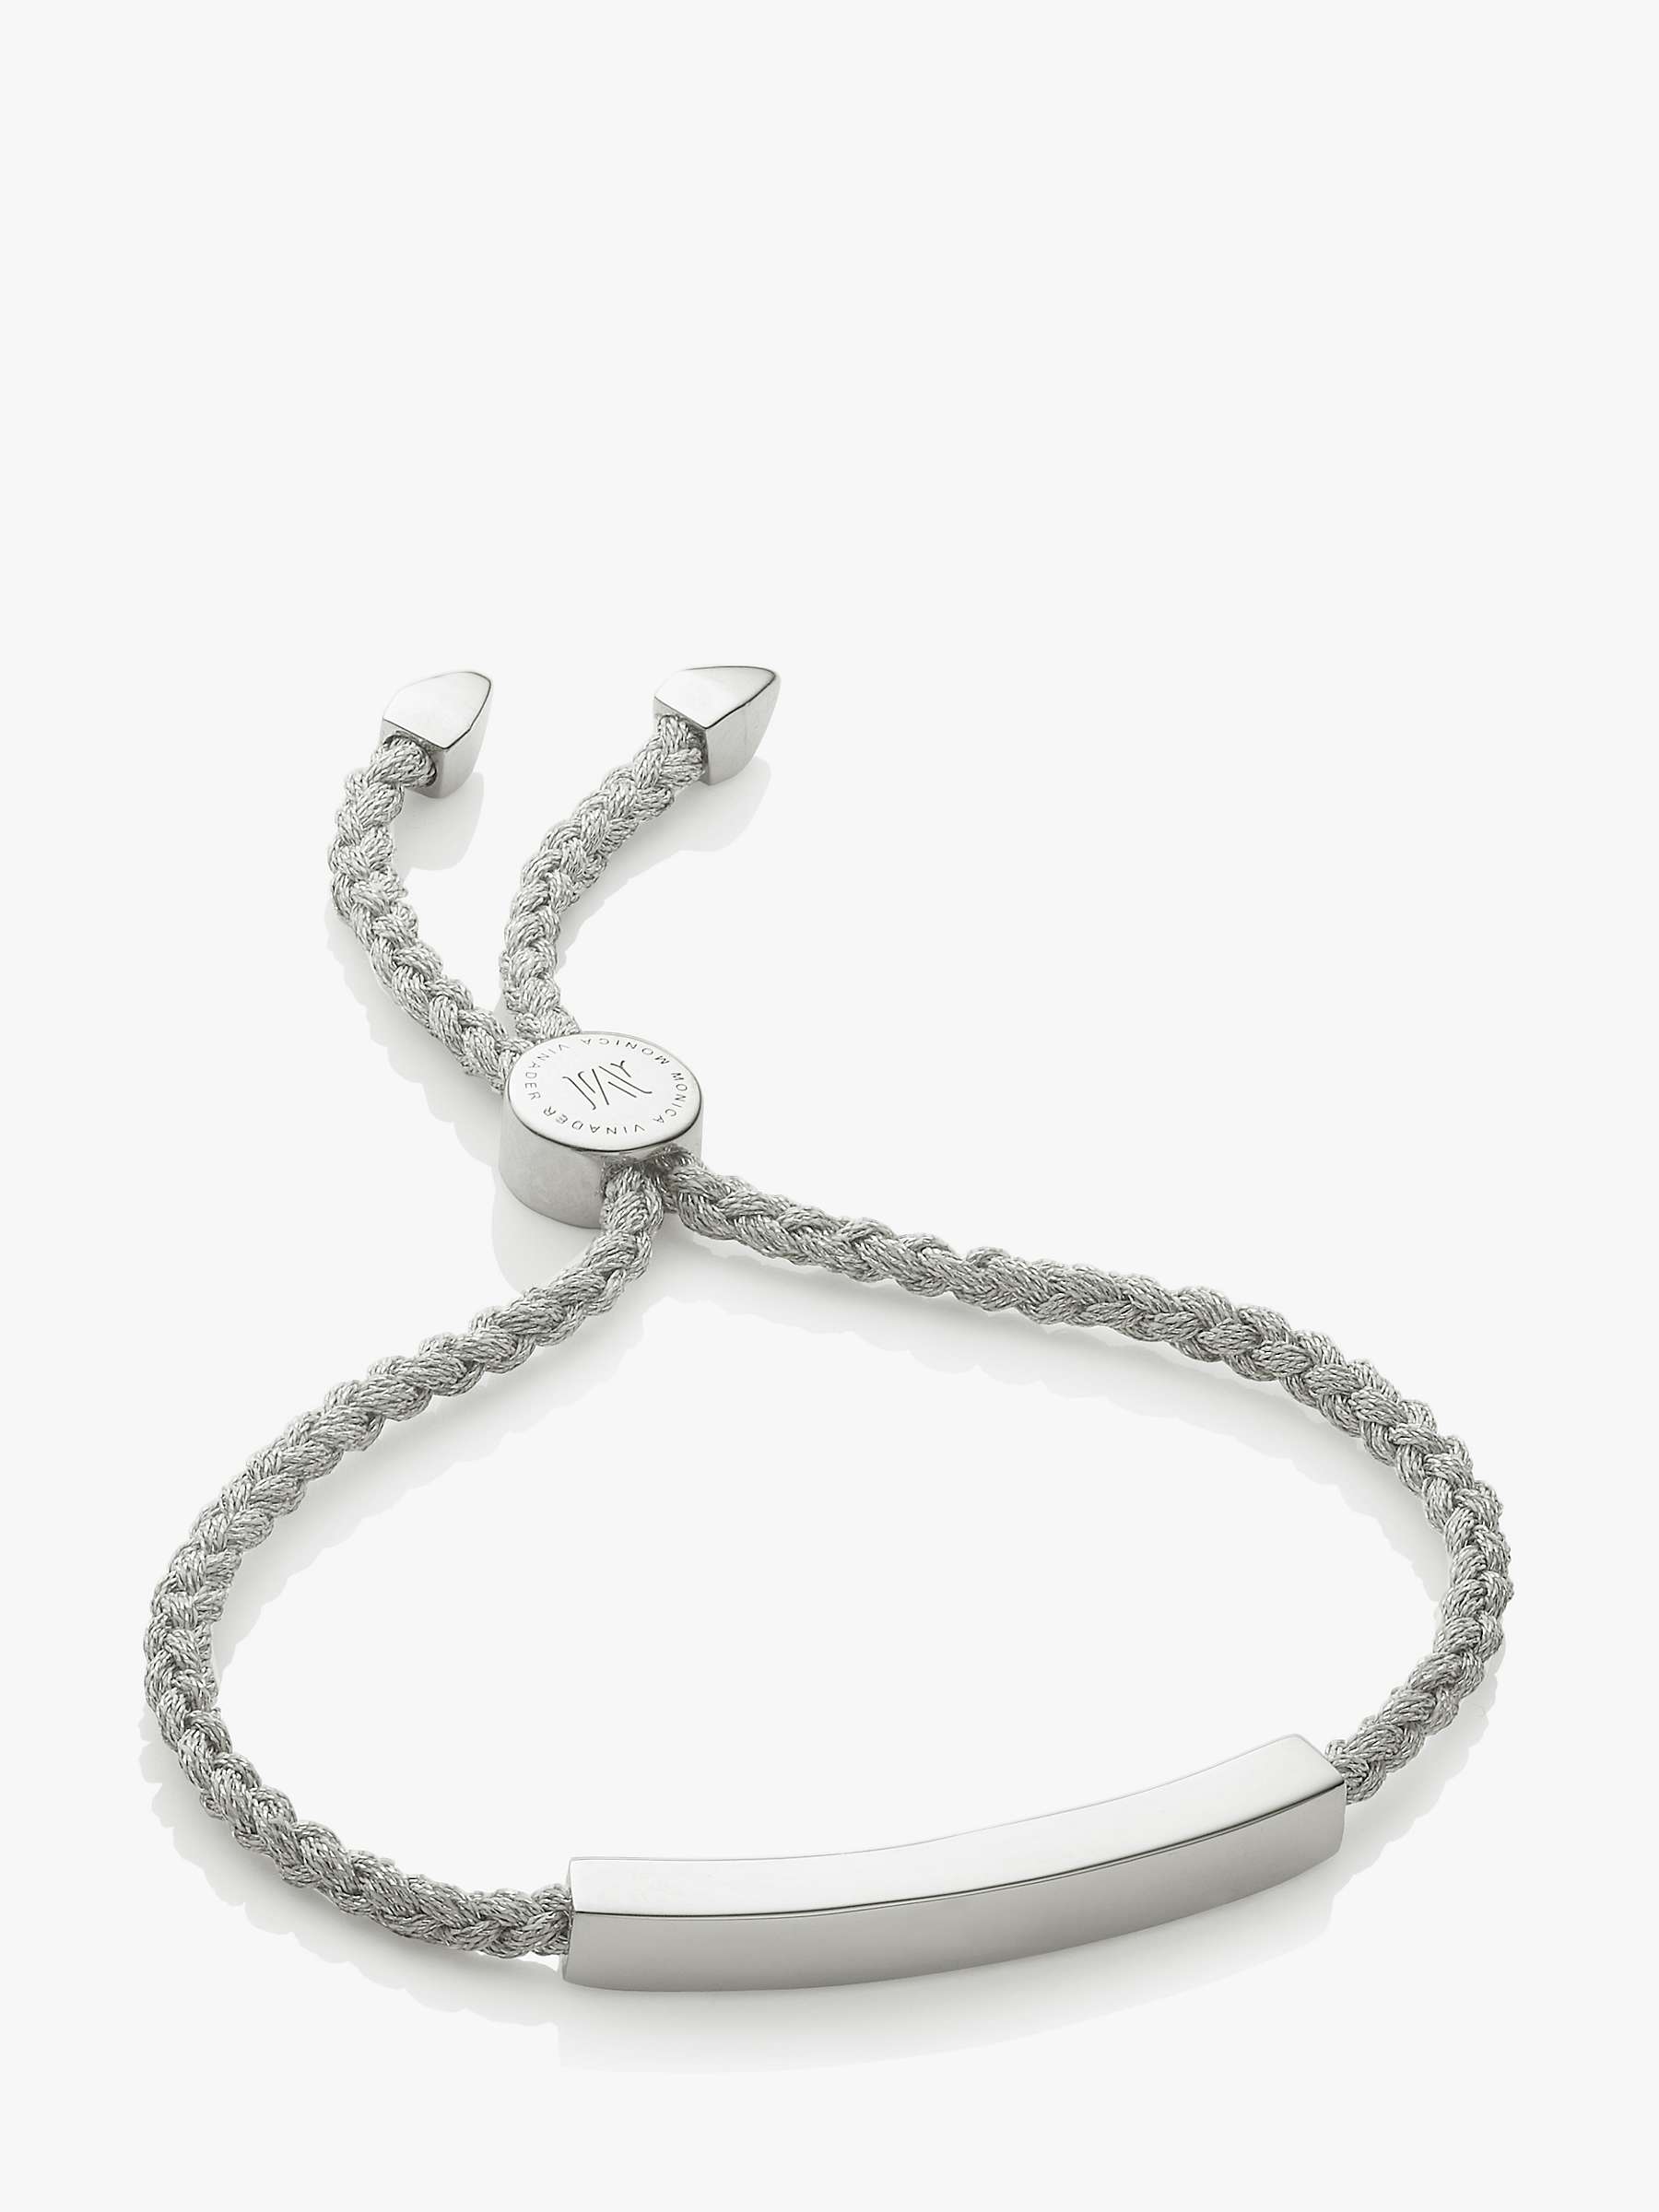 Buy Monica Vinader Linear Friendship Bracelet Online at johnlewis.com